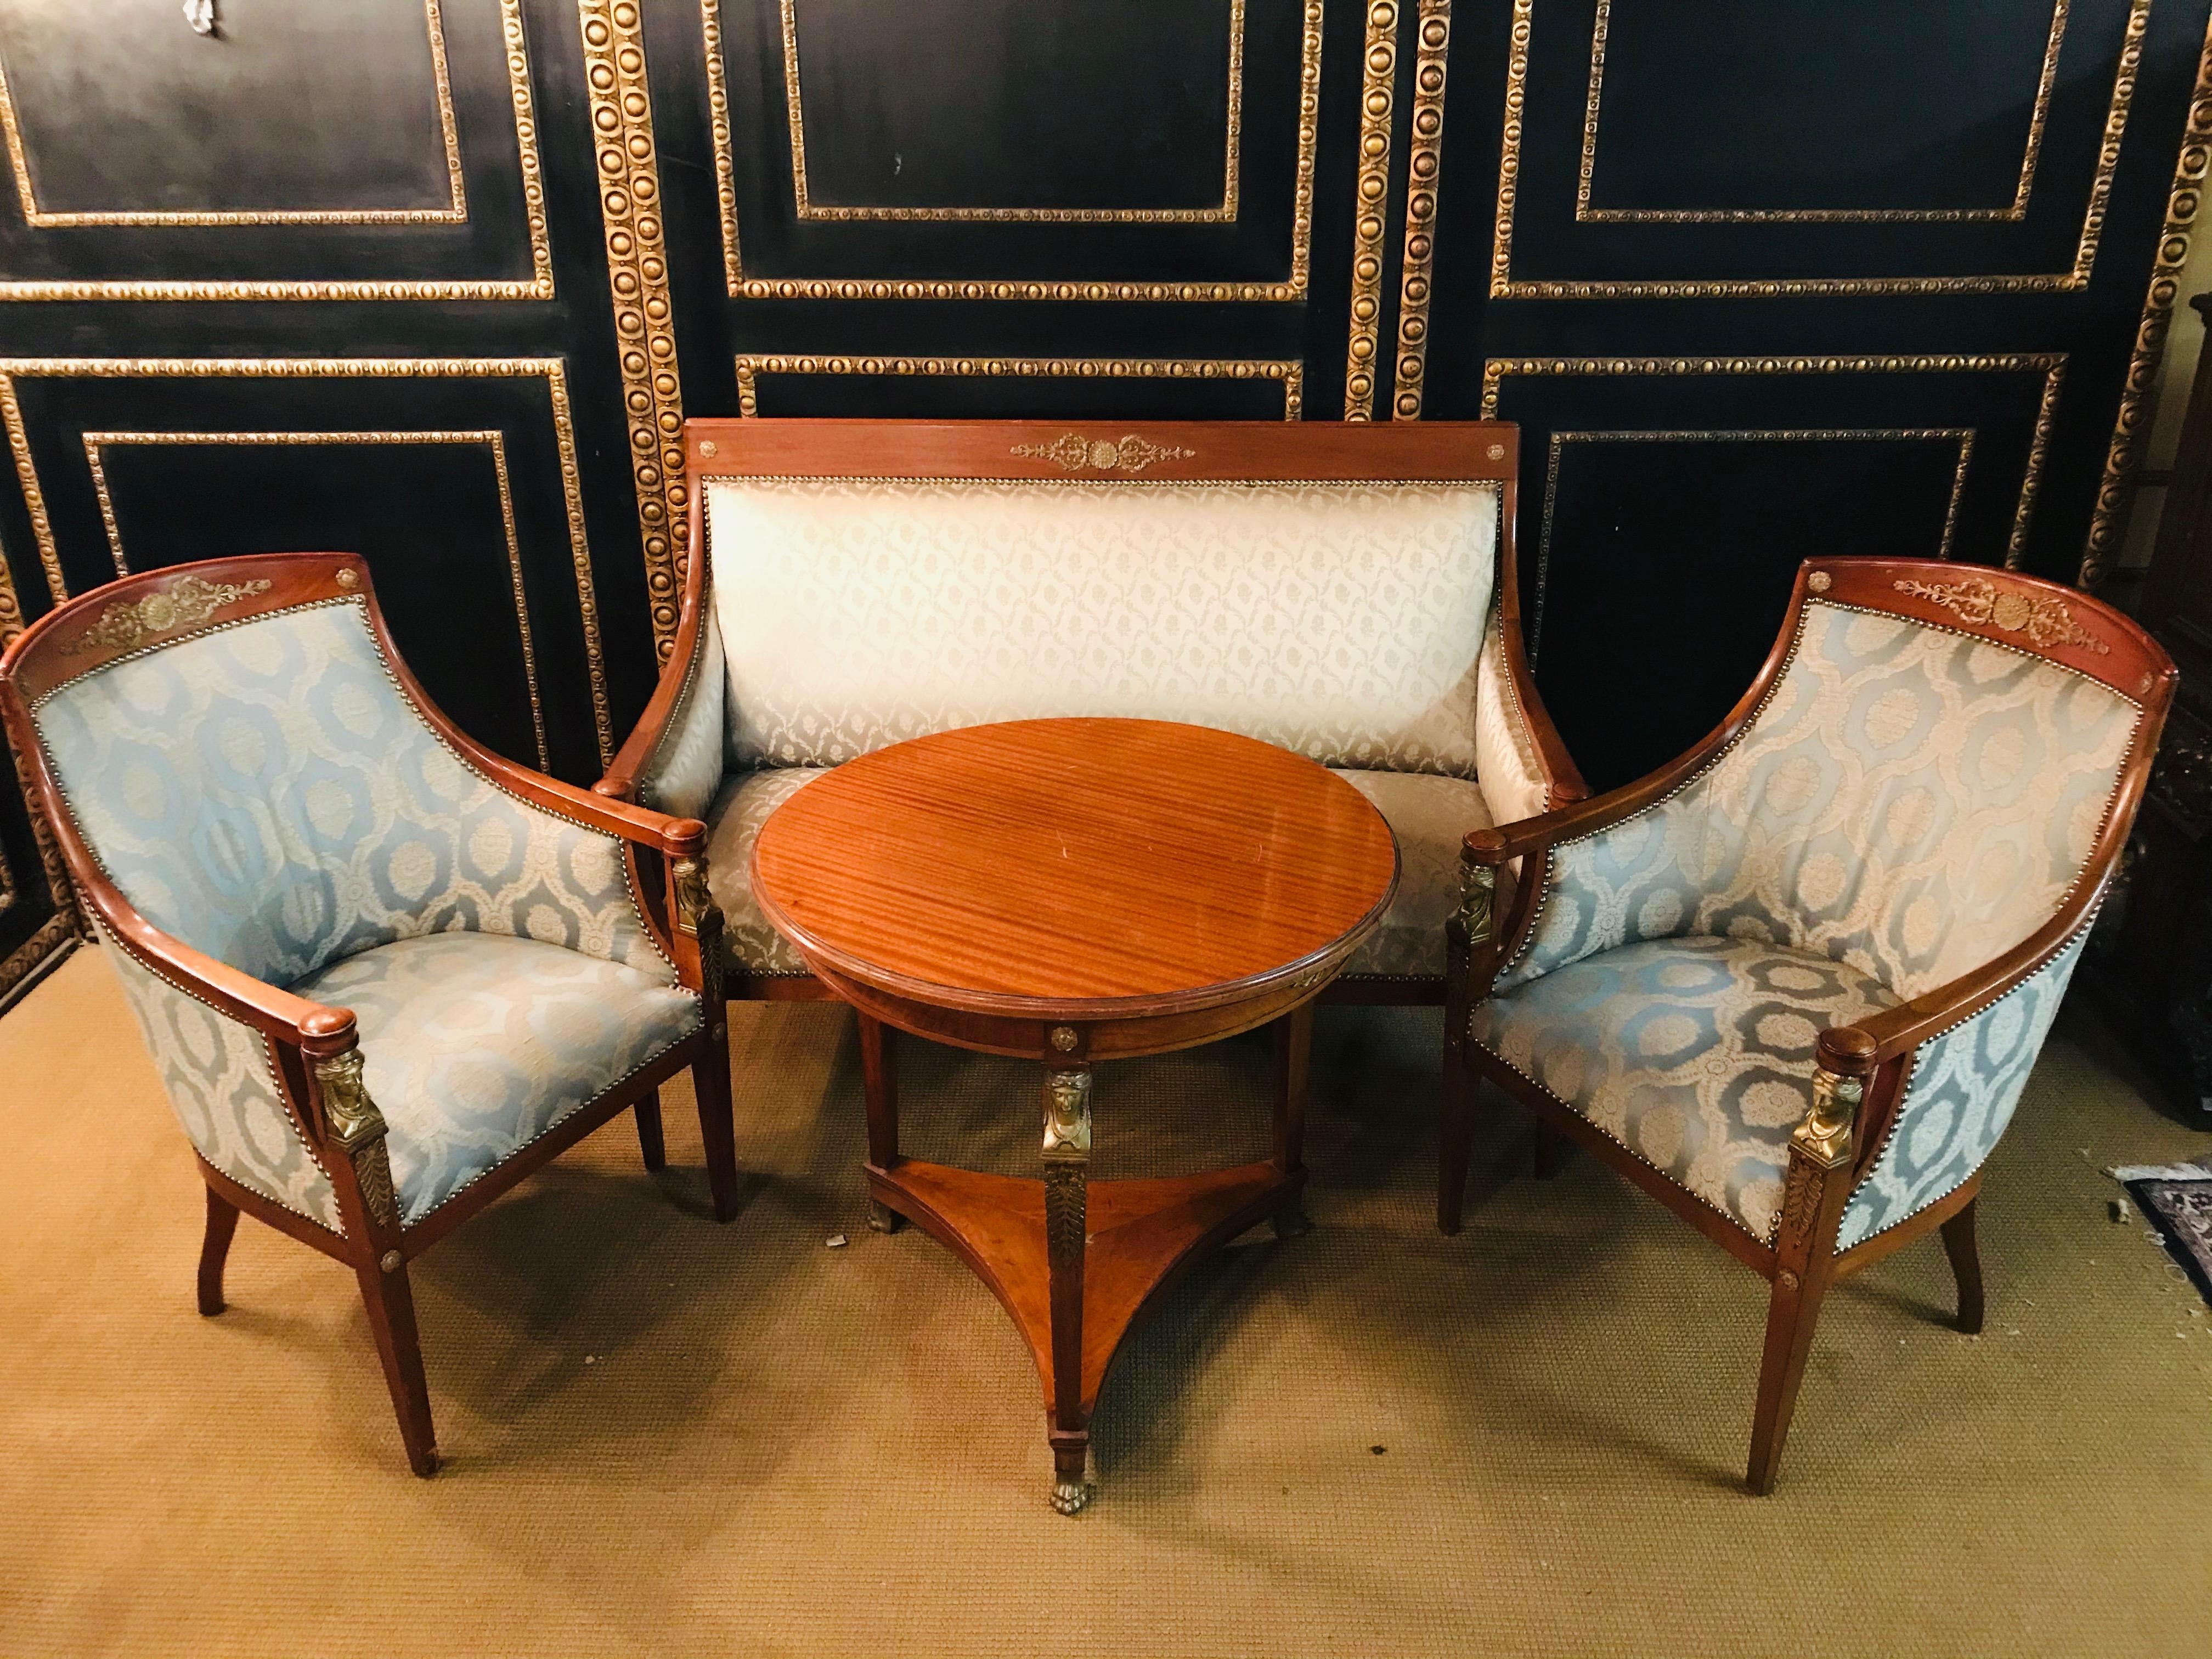 Original Empire-Sofa um 1860-1870 aus einem Empire-Zimmer.
Massive Mahagoni mit Empire-Karyaditen Bronze gegossen.
Die Sessel sind aus einem anderen Stoff als das Sofa gefertigt und sollten ersetzt werden
Bester